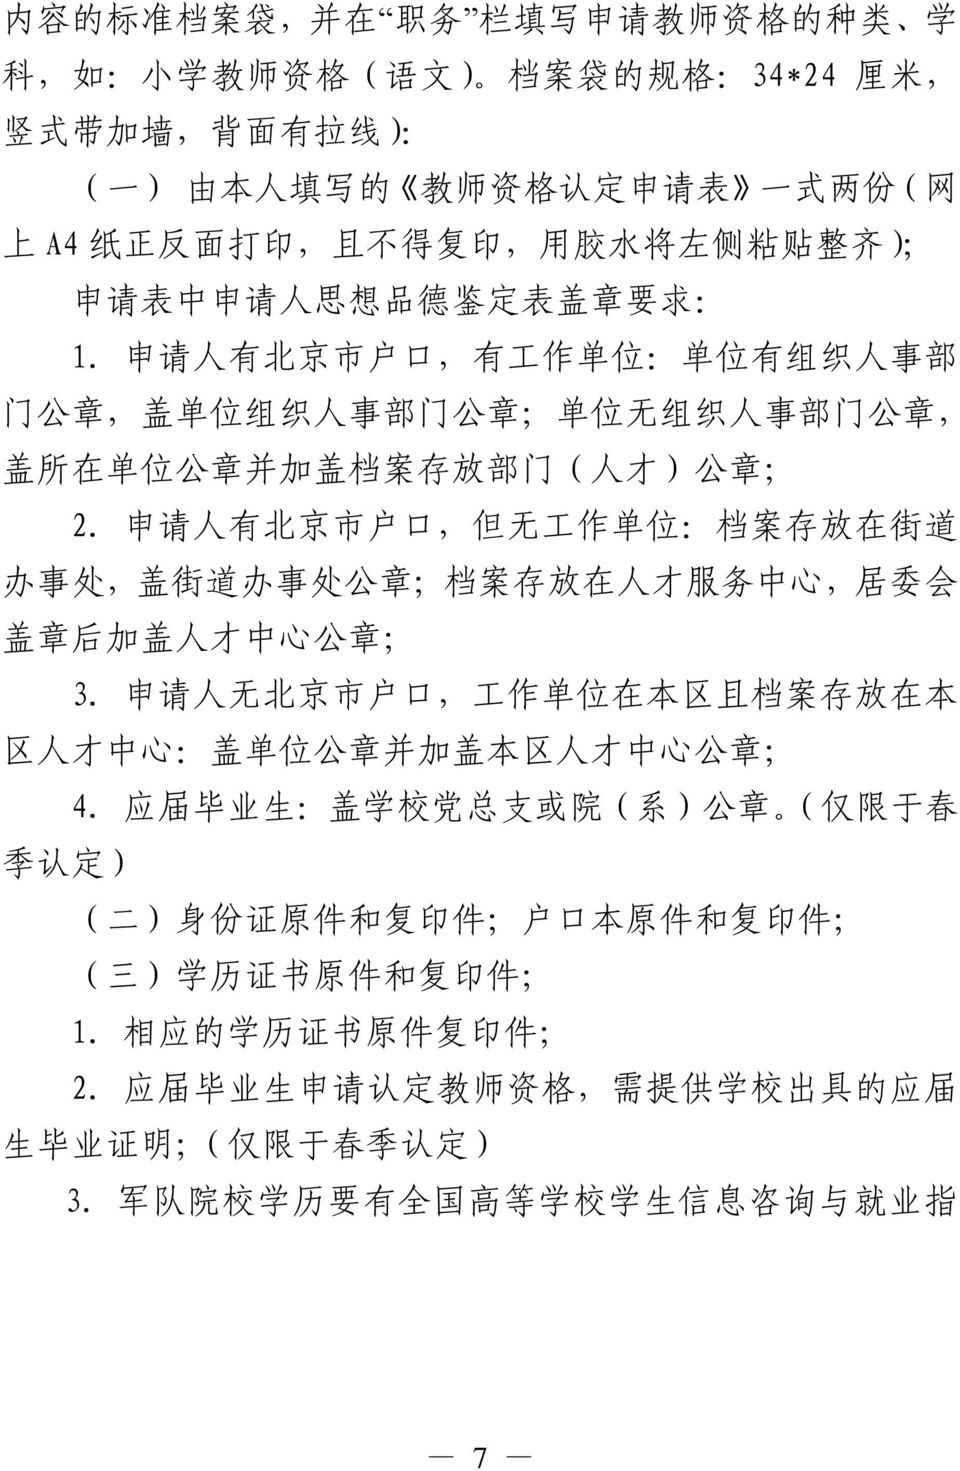 申 请 人 有 北 京 市 户 口, 有 工 作 单 位 : 单 位 有 组 织 人 事 部 门 公 章, 盖 单 位 组 织 人 事 部 门 公 章 ; 单 位 无 组 织 人 事 部 门 公 章, 盖 所 在 单 位 公 章 并 加 盖 档 案 存 放 部 门 ( 人 才 ) 公 章 ; 2.